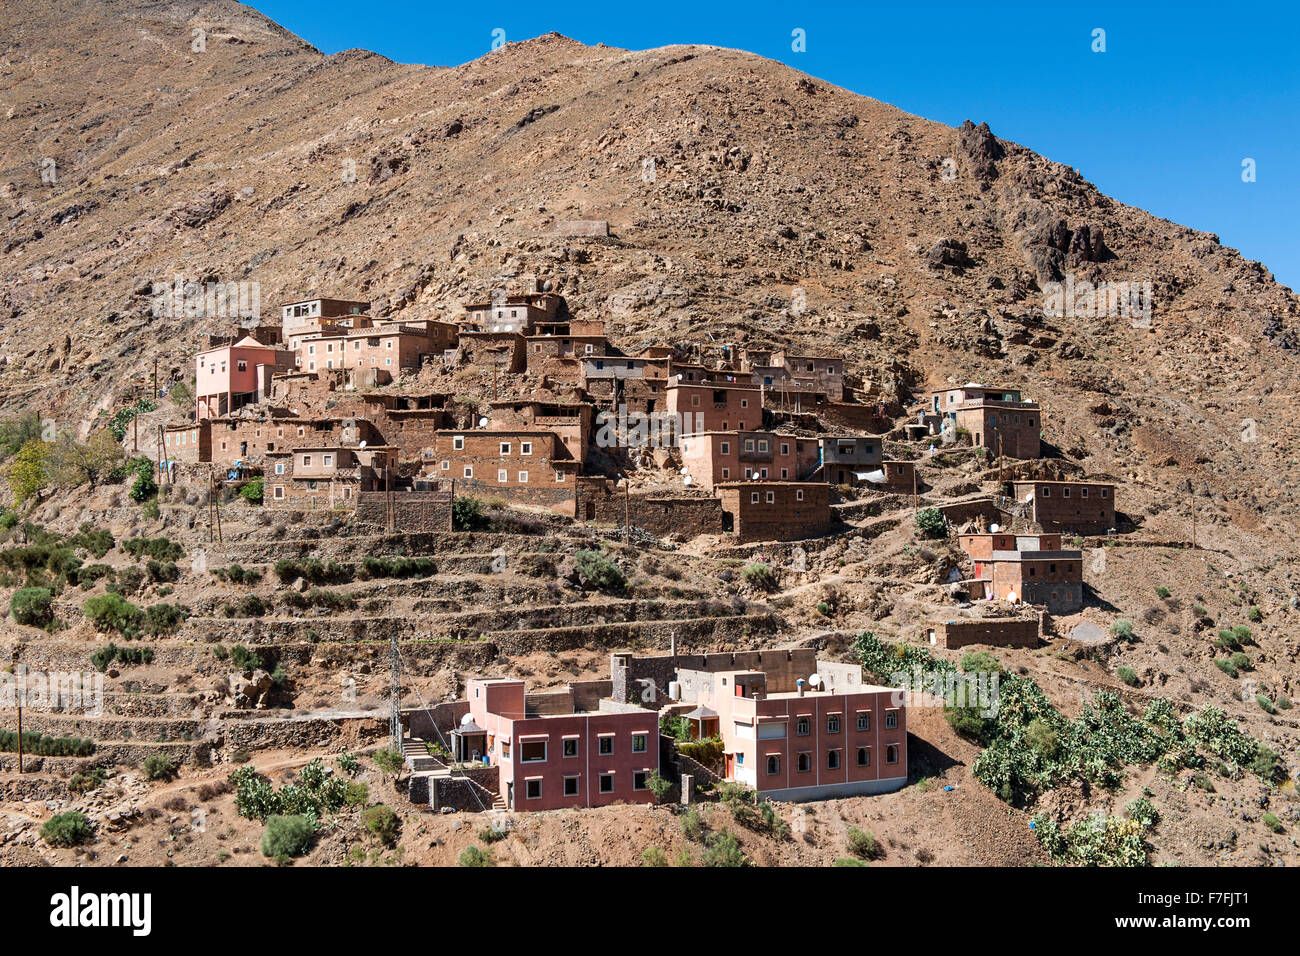 Matate comune nei pressi del villaggio di Imlil nelle montagne Atlas in Marocco. Foto Stock